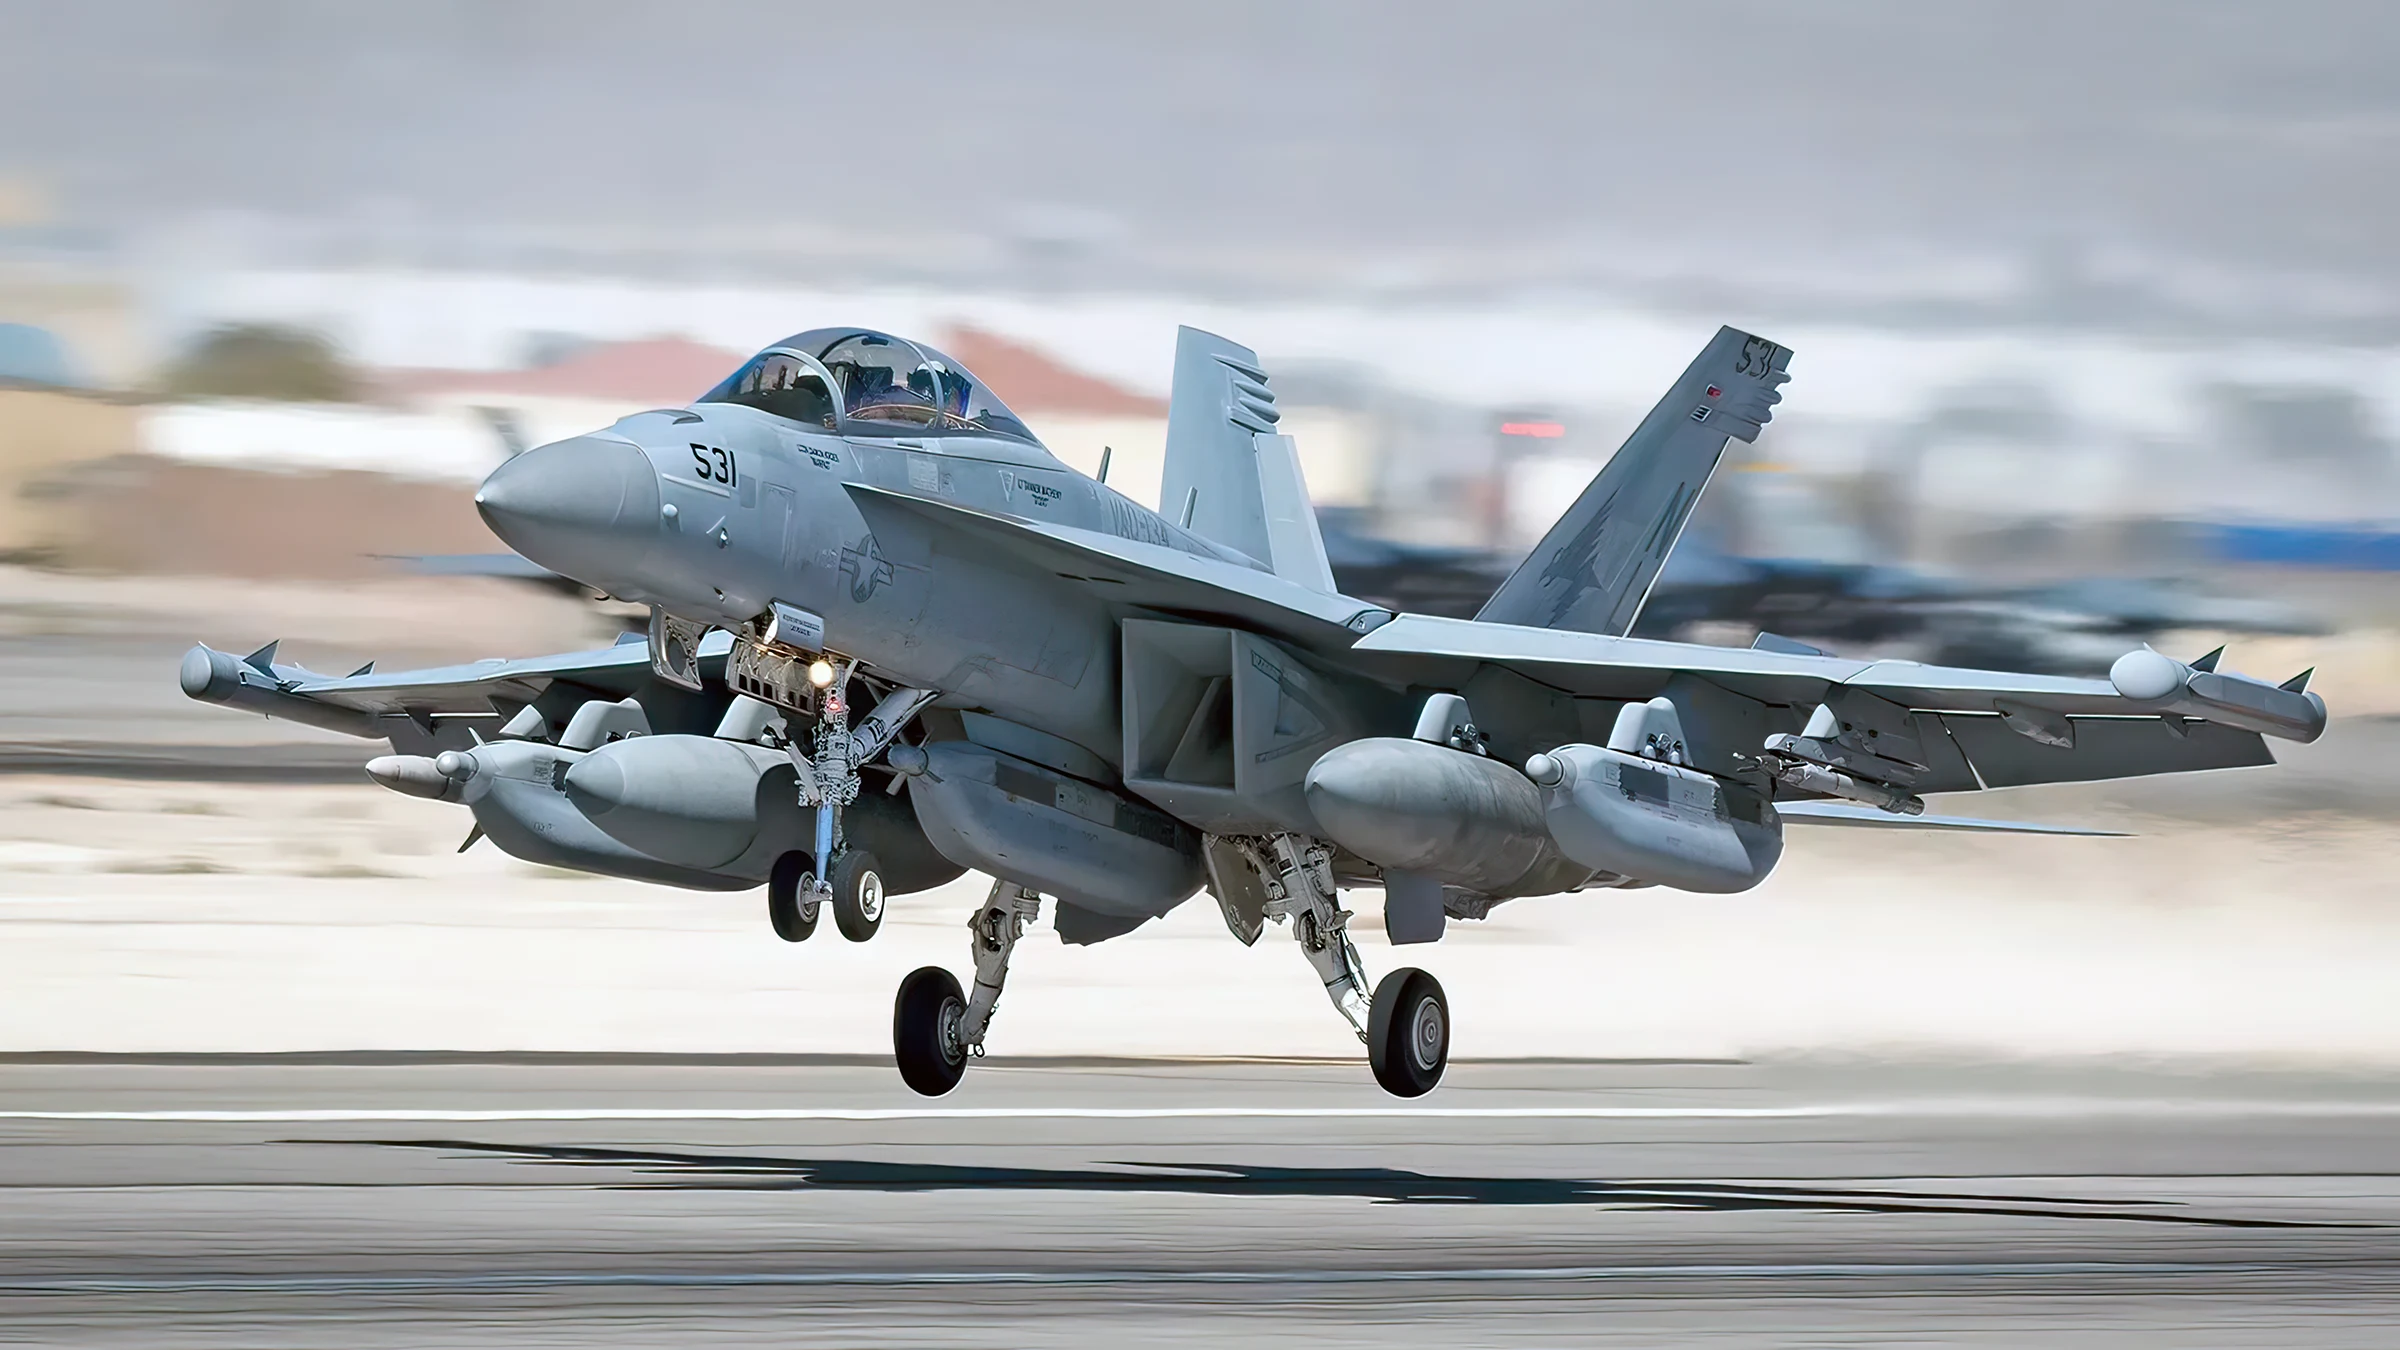 El EA-18G Growler: Tecnología de guerra electrónica aeronáutica